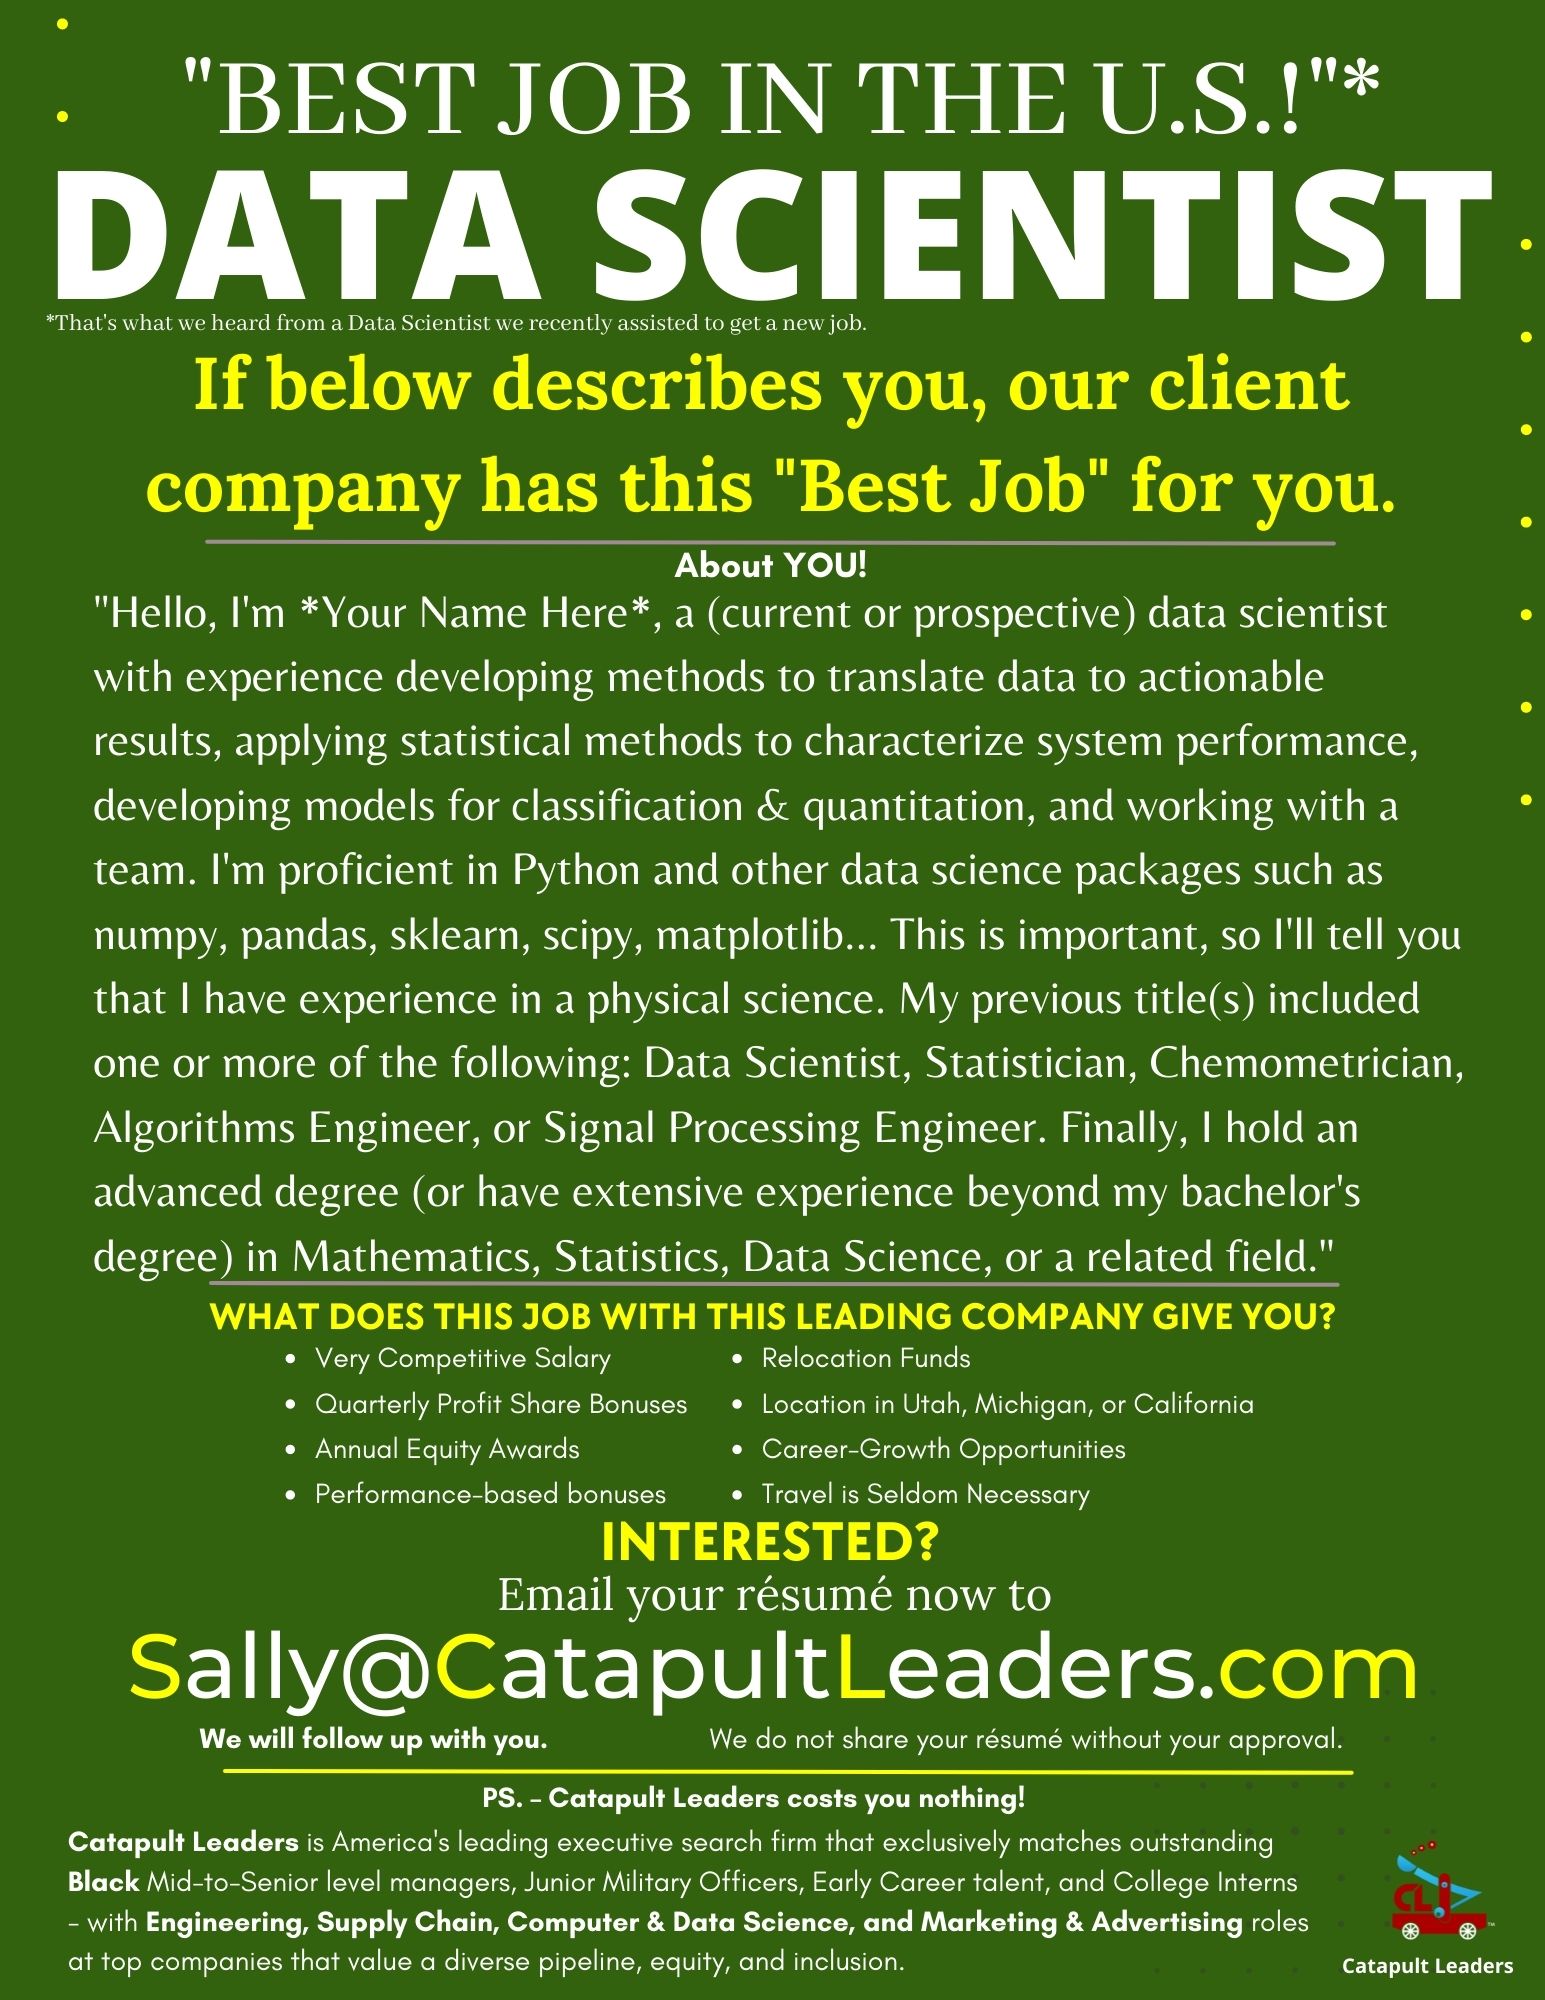 Data-Scientist-Catapult-Leaders.